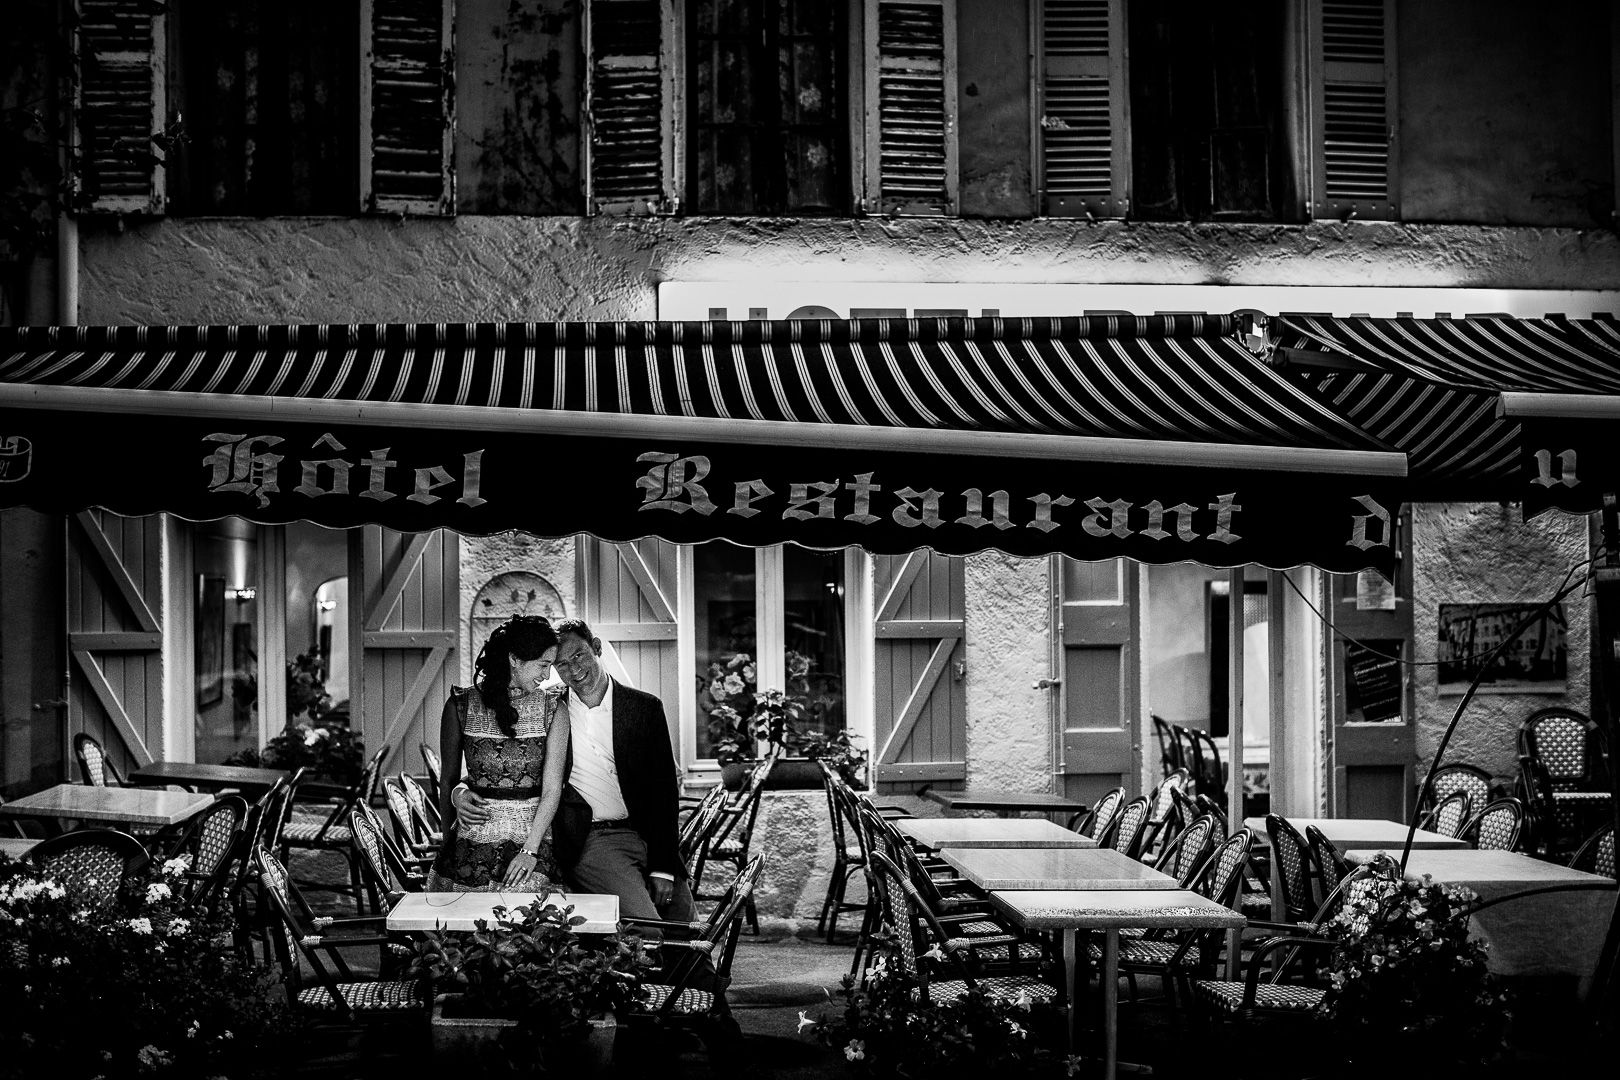 hochzeitsfotograf St. Tropez, Süd Frankreich, Hochzeitsreportage, Hochzeitsfilm - Steffen Löffler